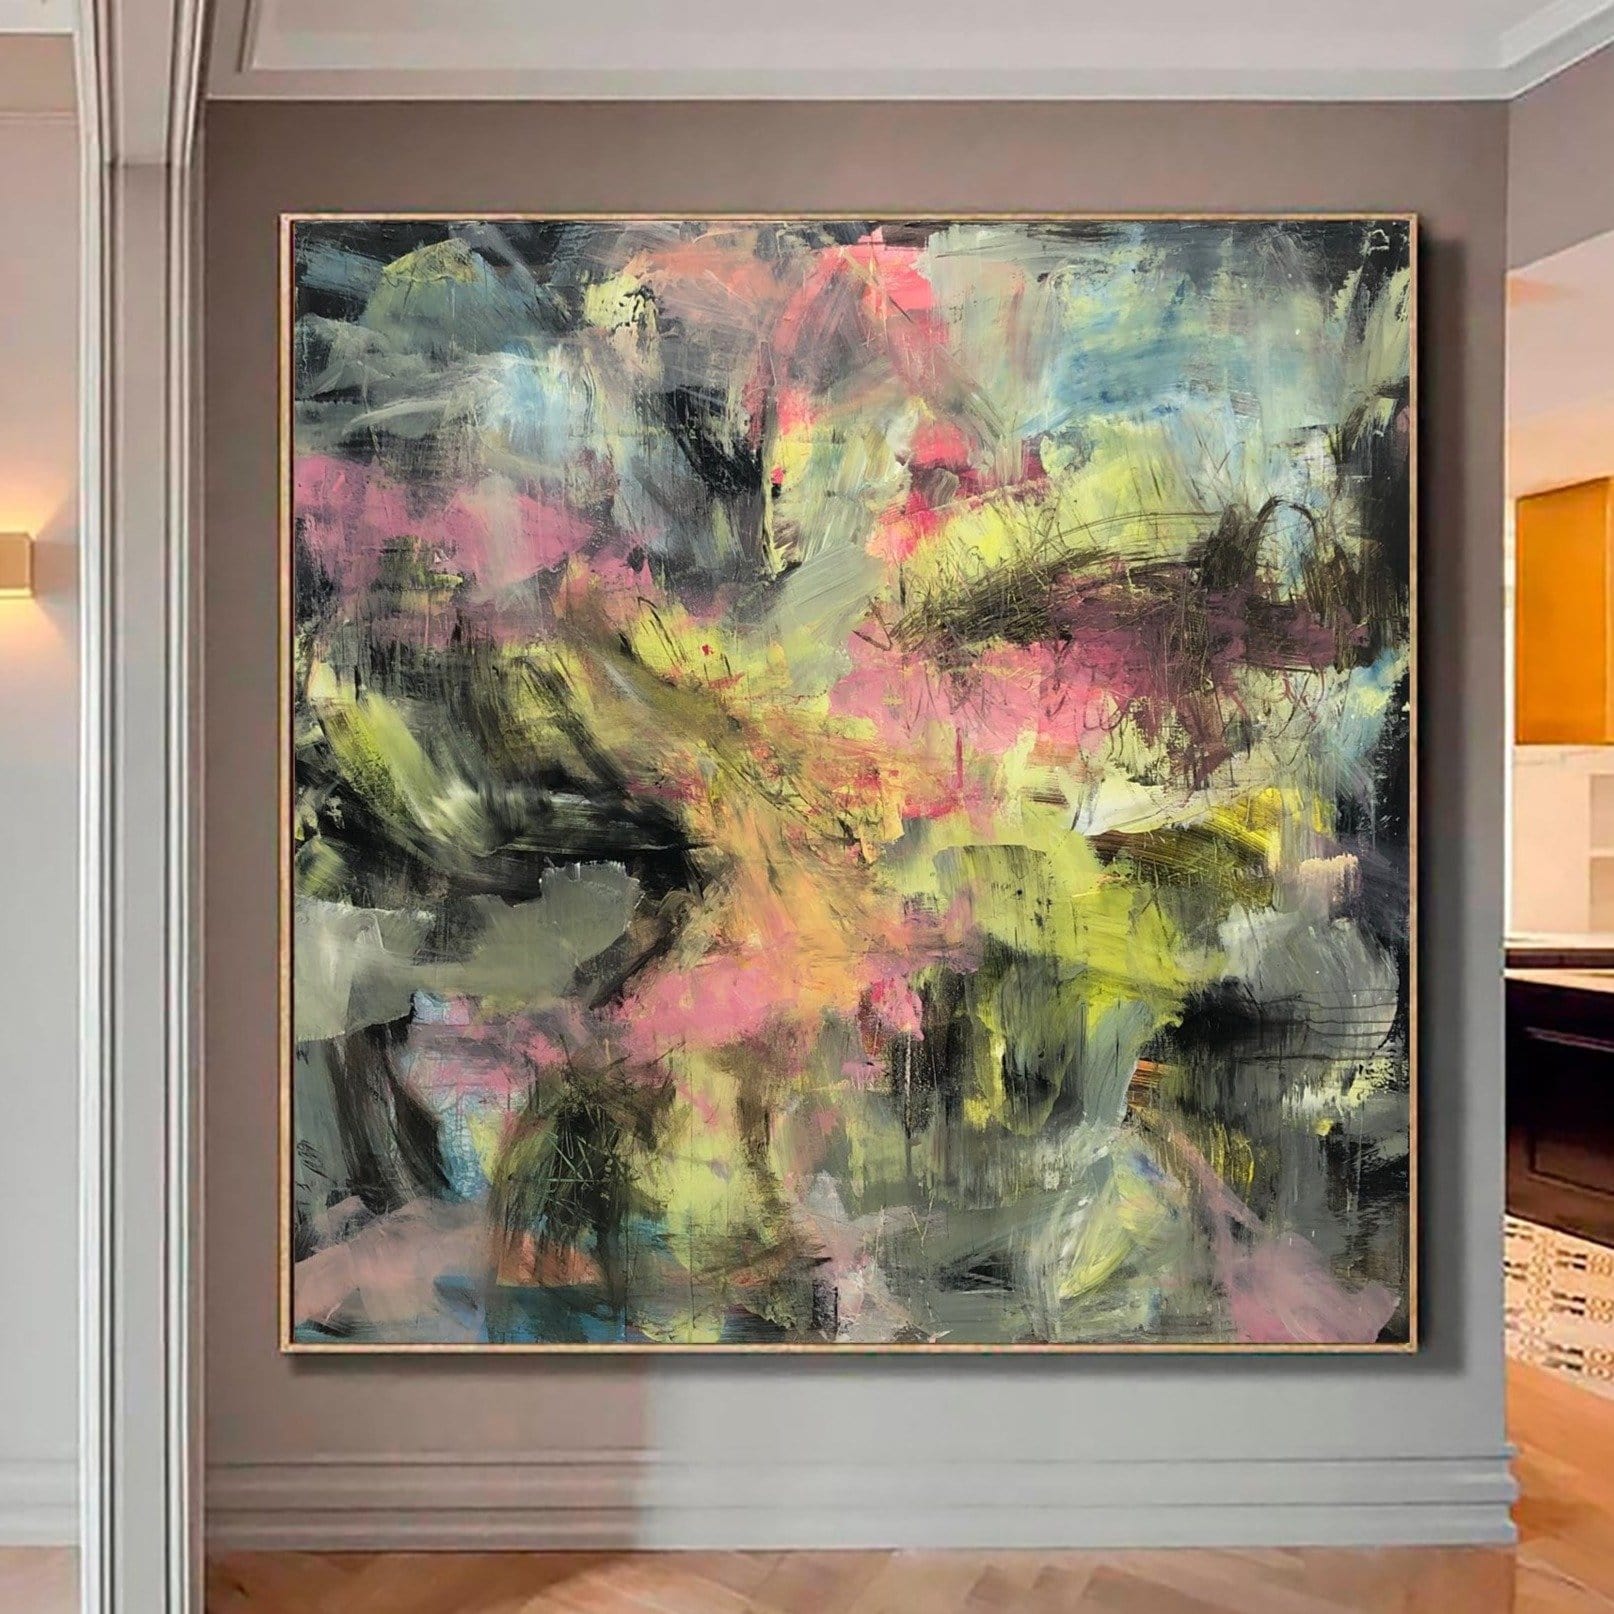 Pintura acrílica grande sobre lienzo, pintura abstracta moderna